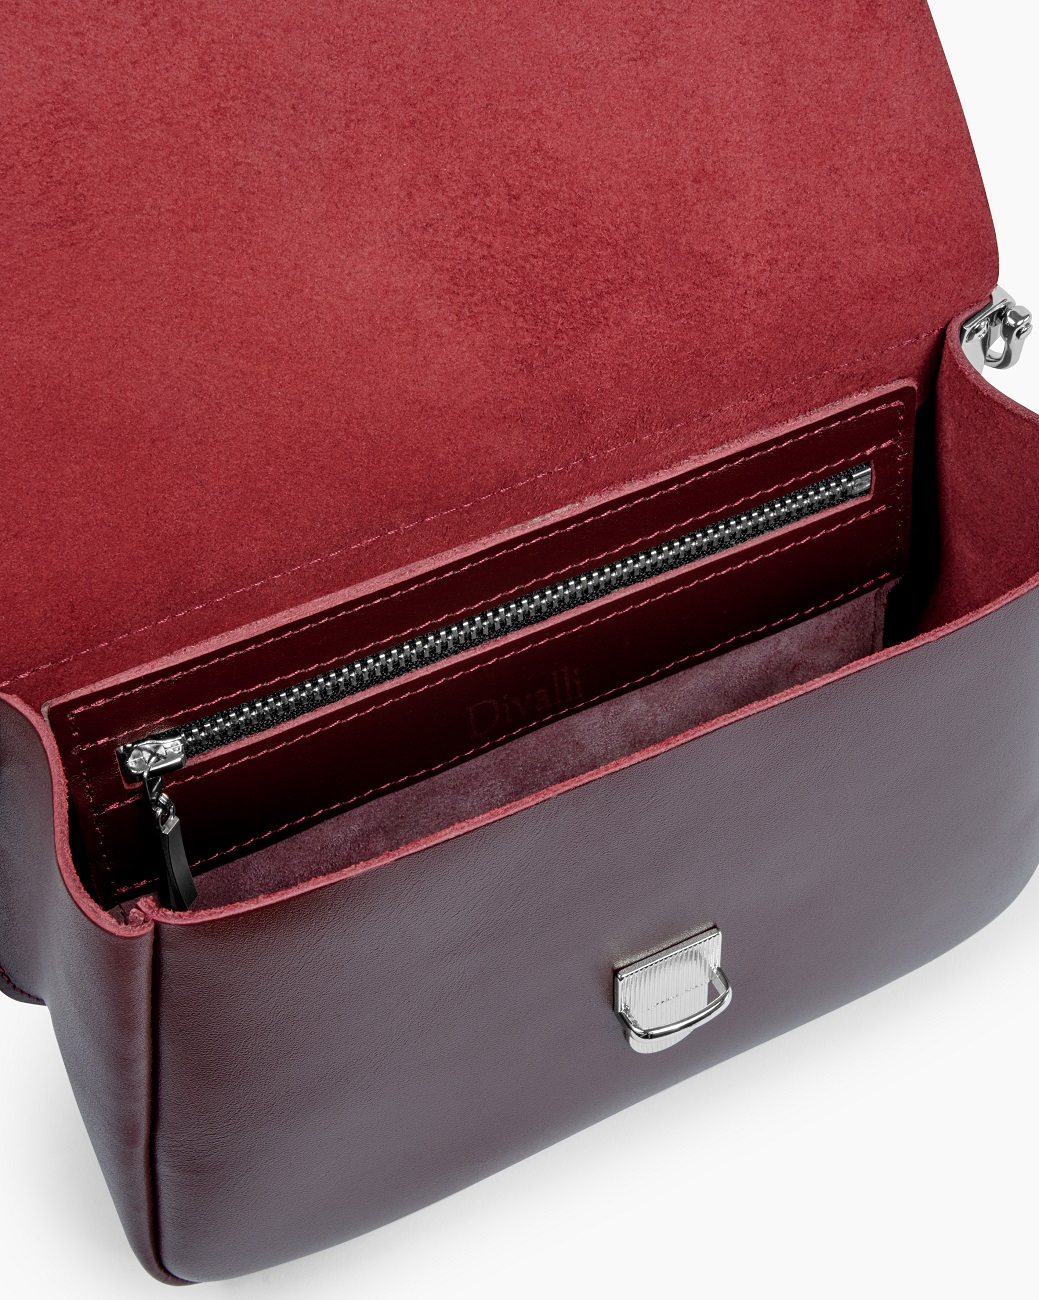 Женская сумка через плечо из натуральной кожи бордовая A001 burgundy